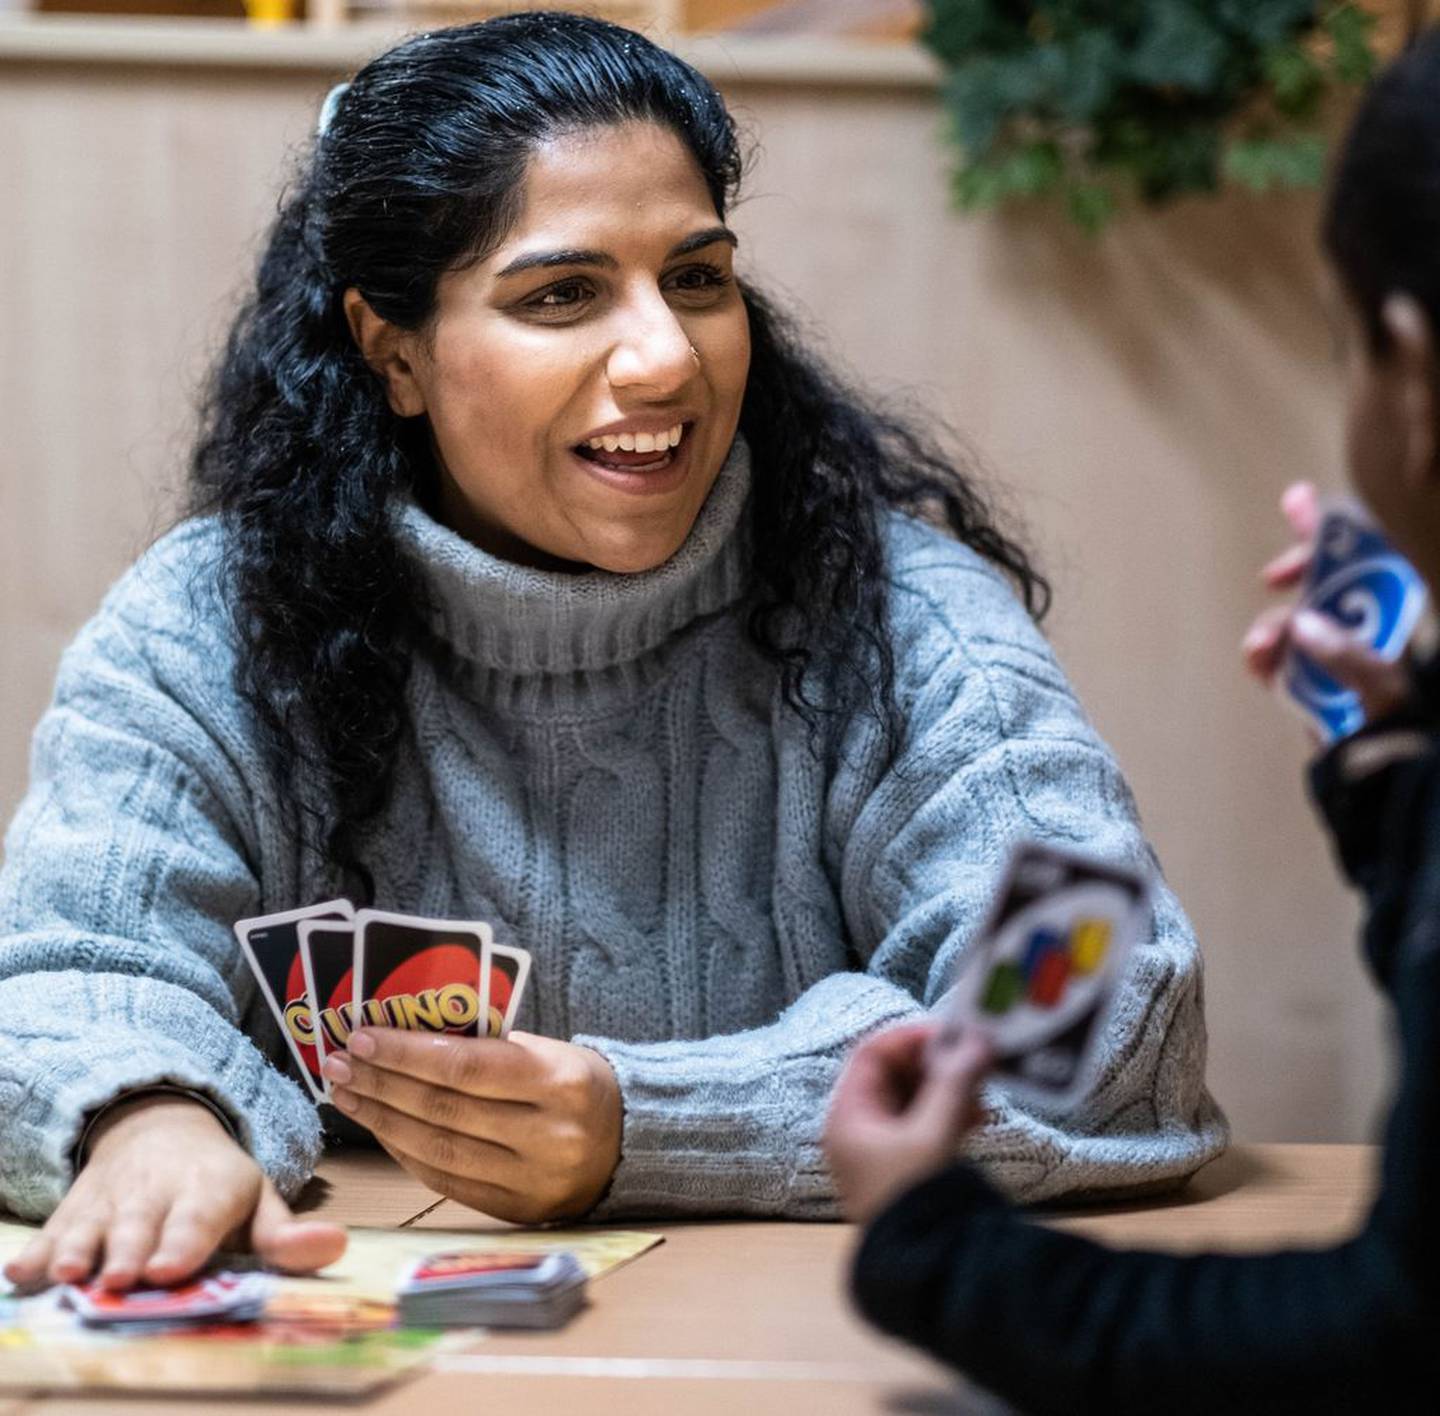 Miljøterapeut Sarika Dait i det nye miljøteamet på Mortensrud skole pleier å spille kort med elevene. Tanken er å lære dem å vinne og tåle å tape.

Foto: Hanna Skotheim/FriFagbevegelse